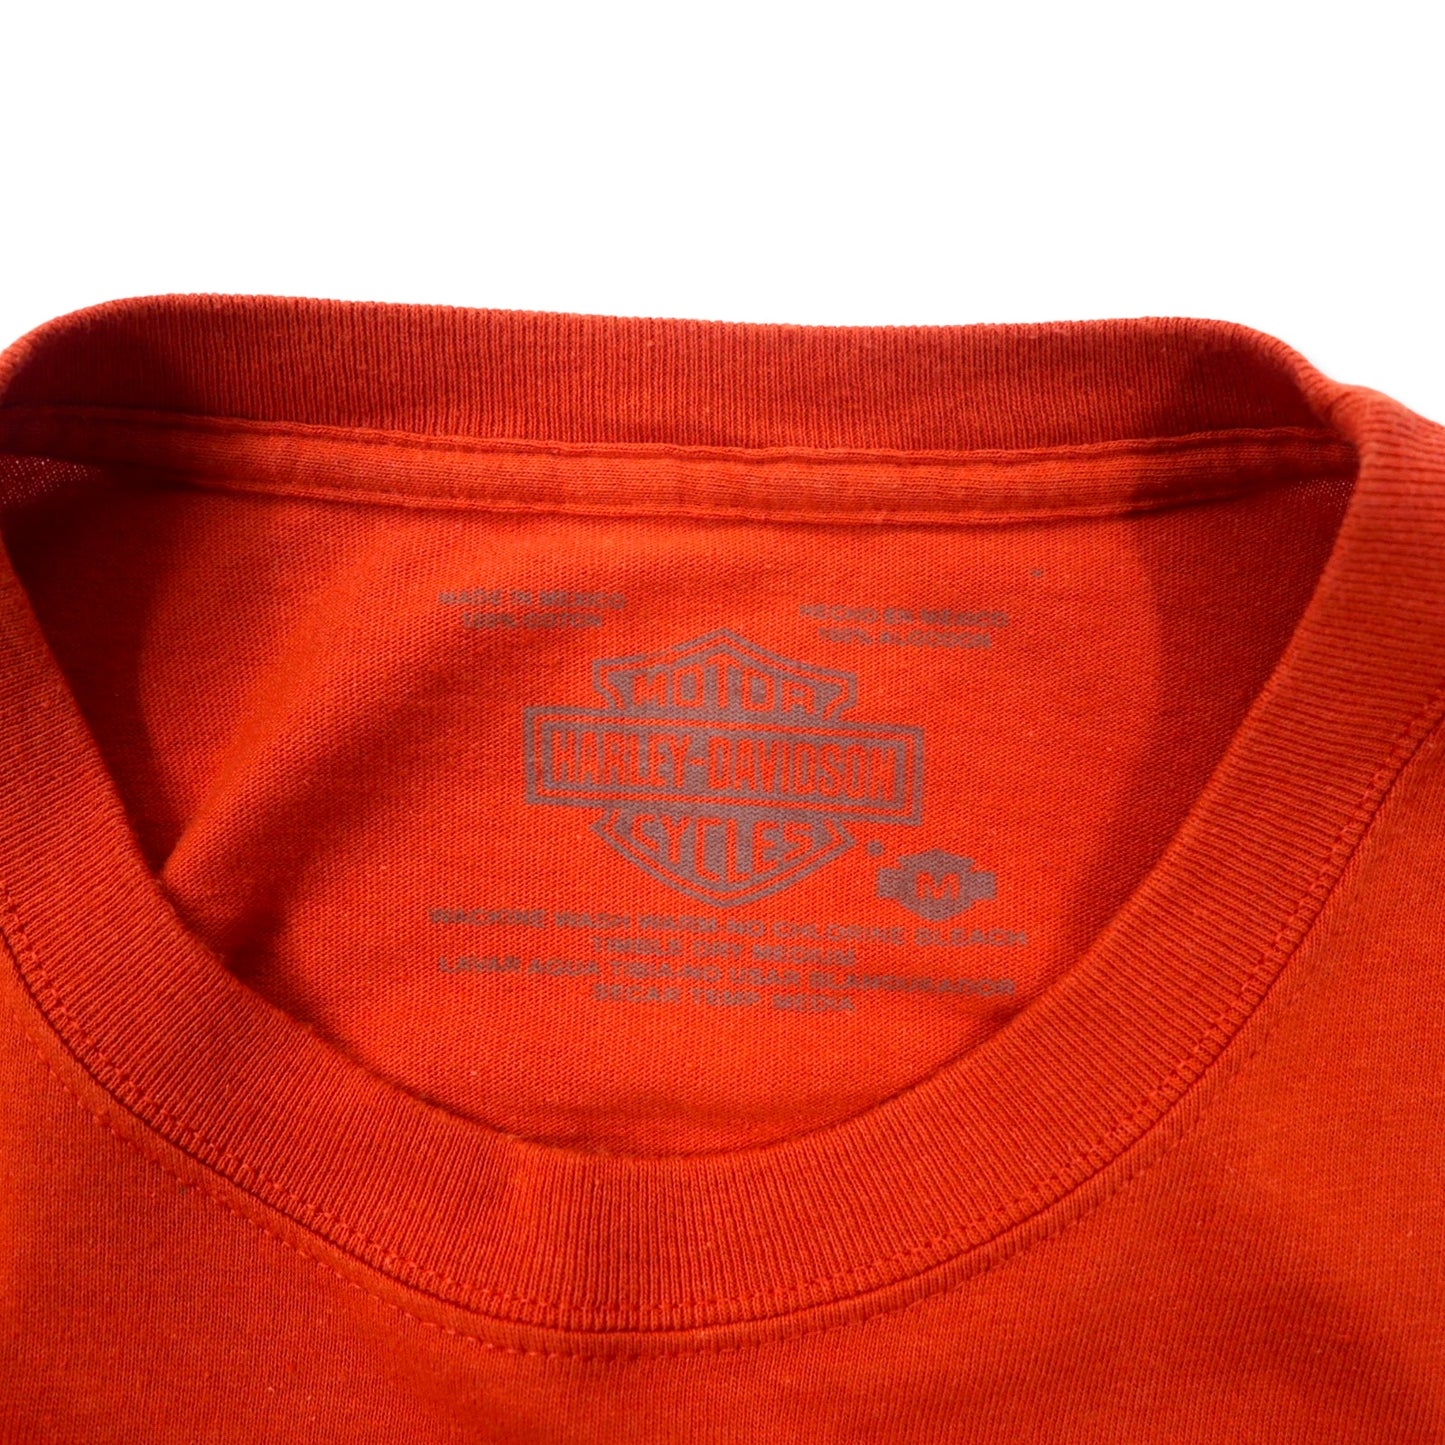 HARLEY DAVIDSON ロゴプリント Tシャツ M オレンジ コットン CANCUN MEXICO メキシコ製